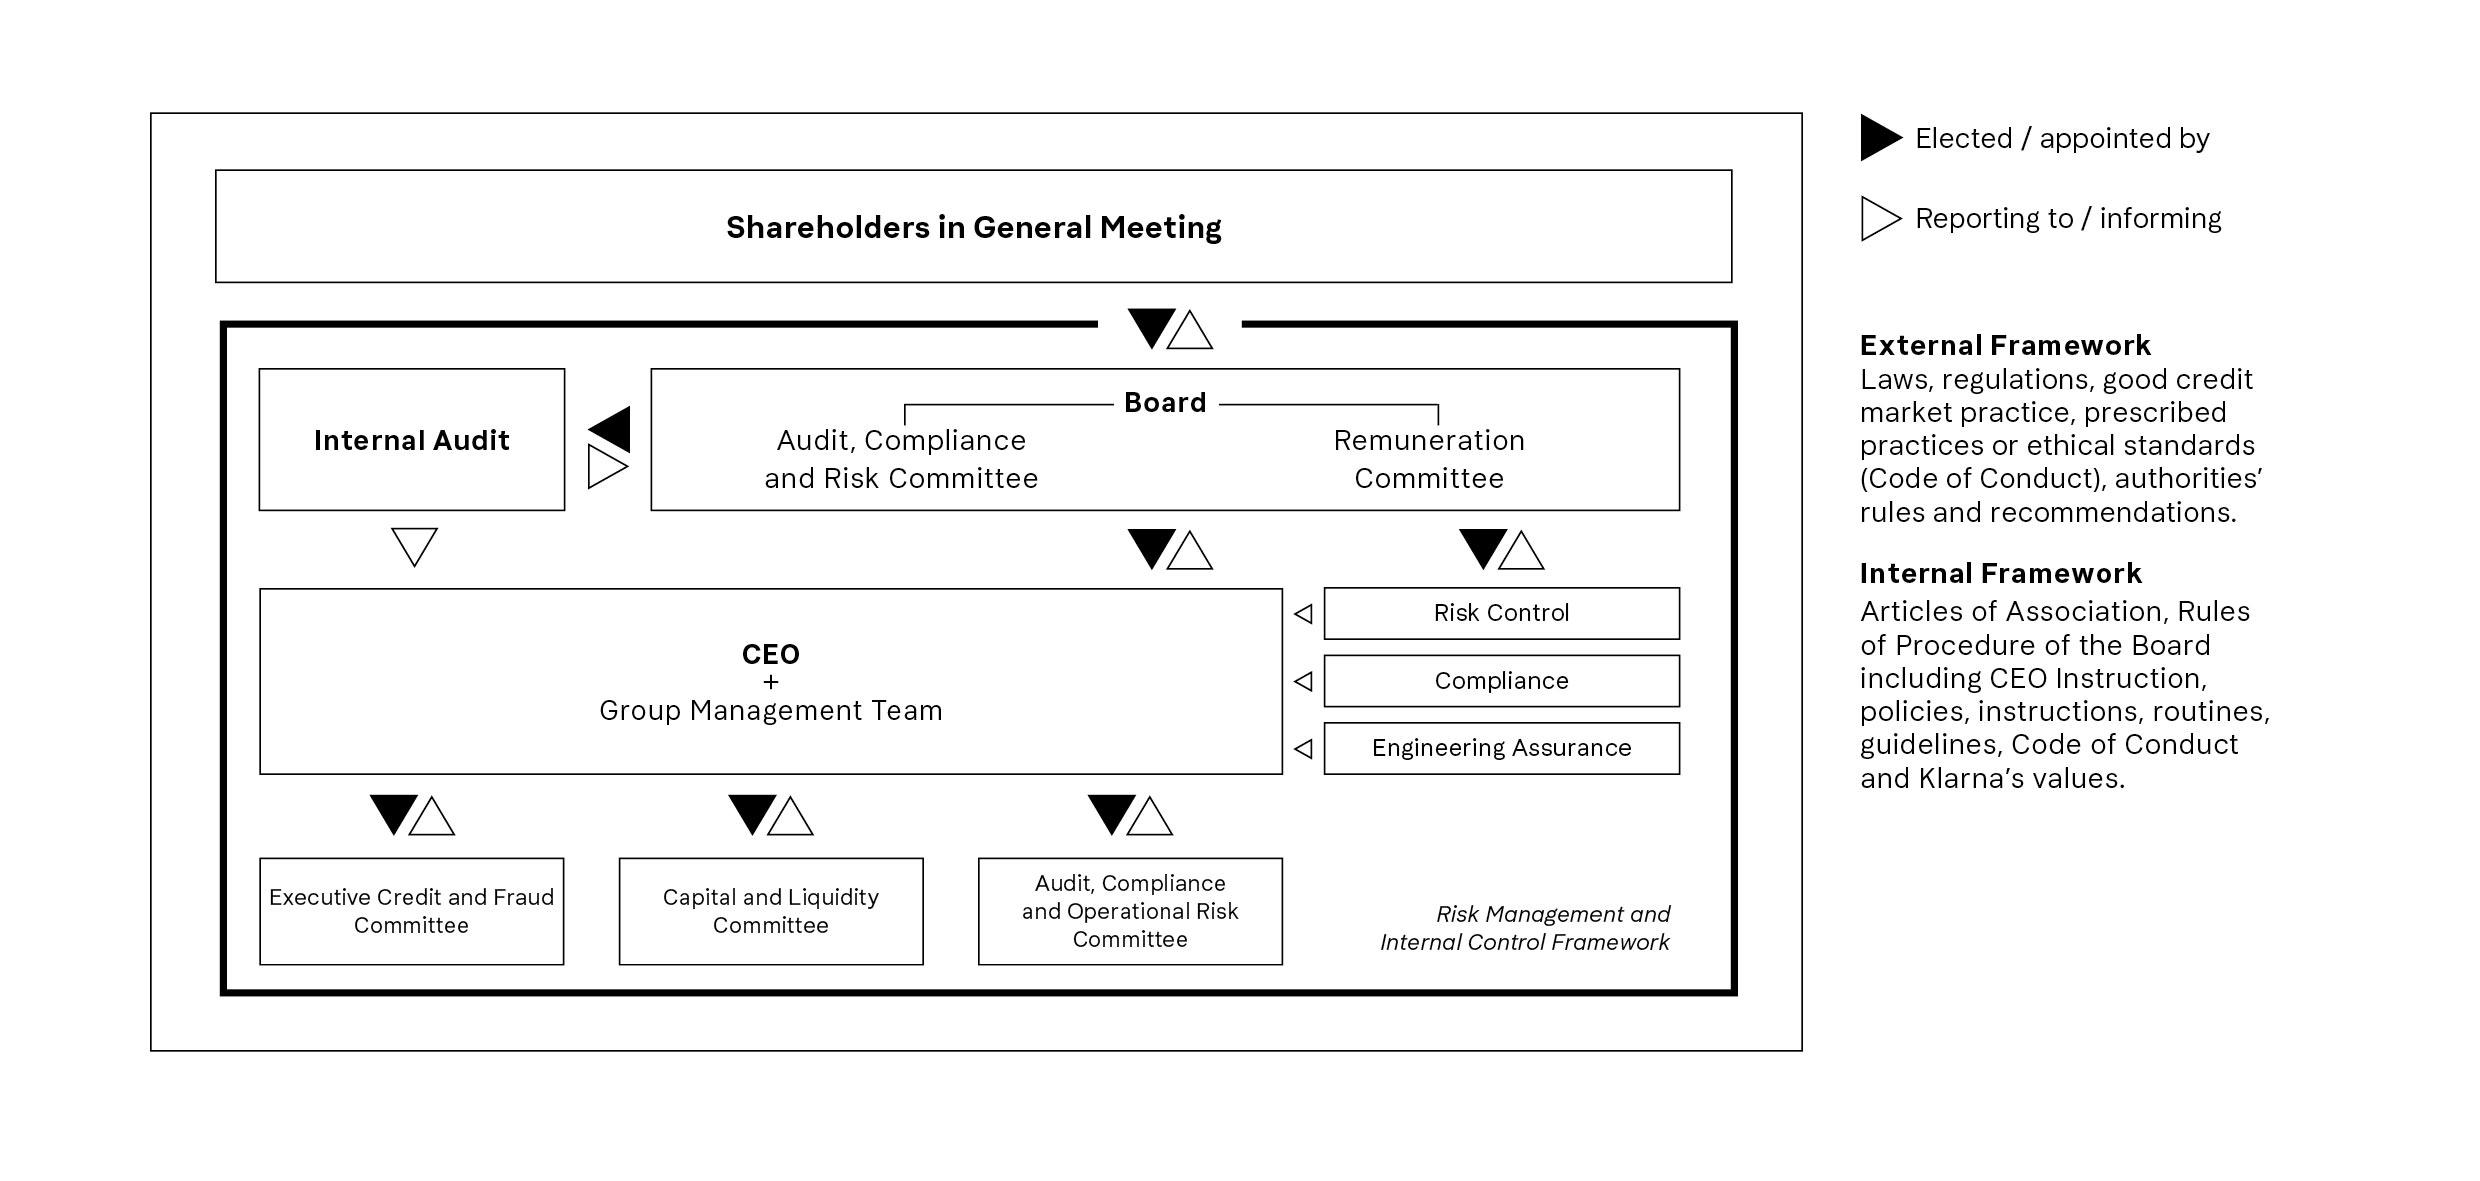 Shareholders-in-General-Meeting_EN.jpg